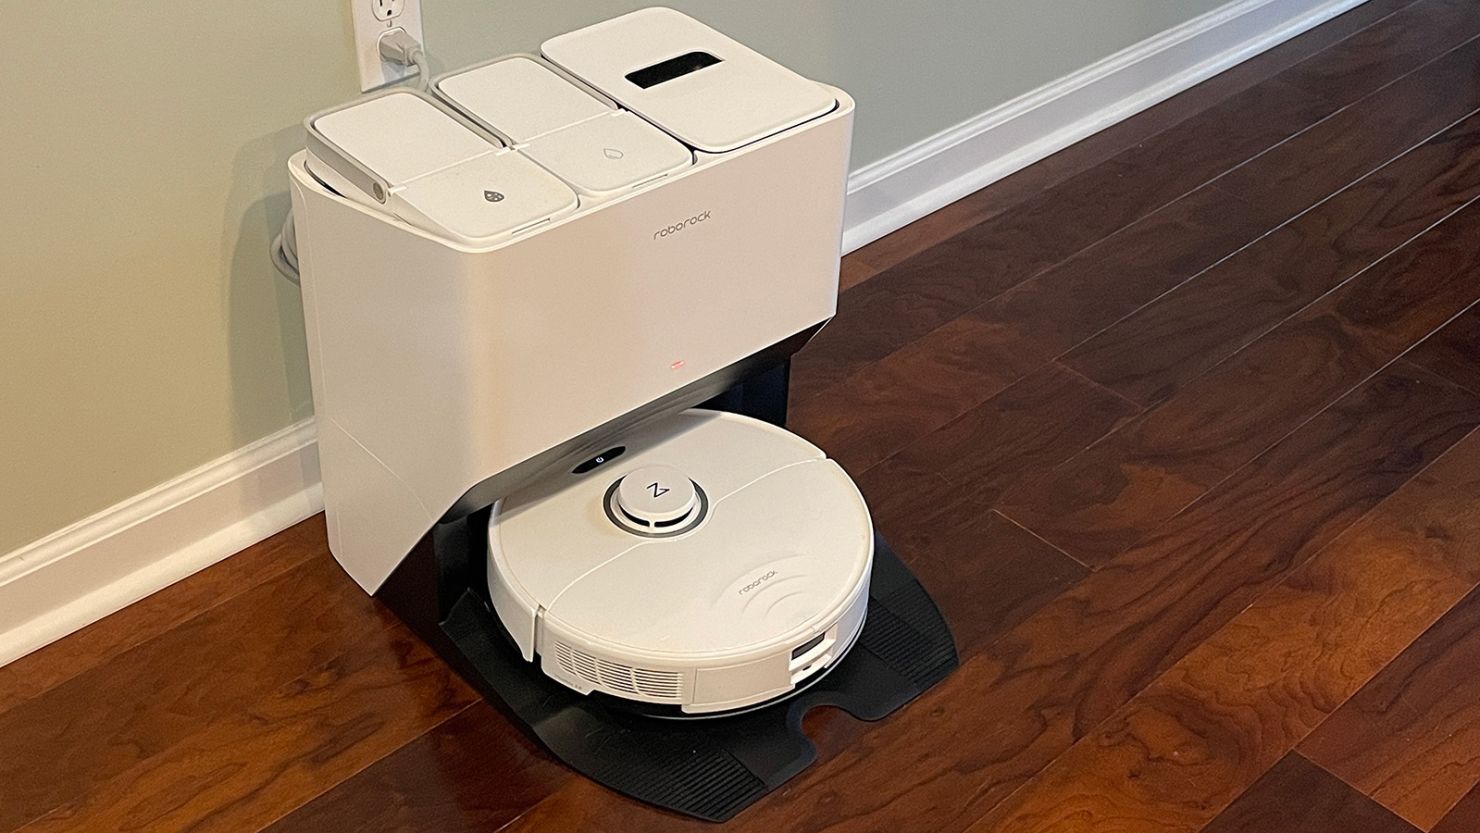 Roborock S5 Max Robot Vacuum & Mop Cleaner